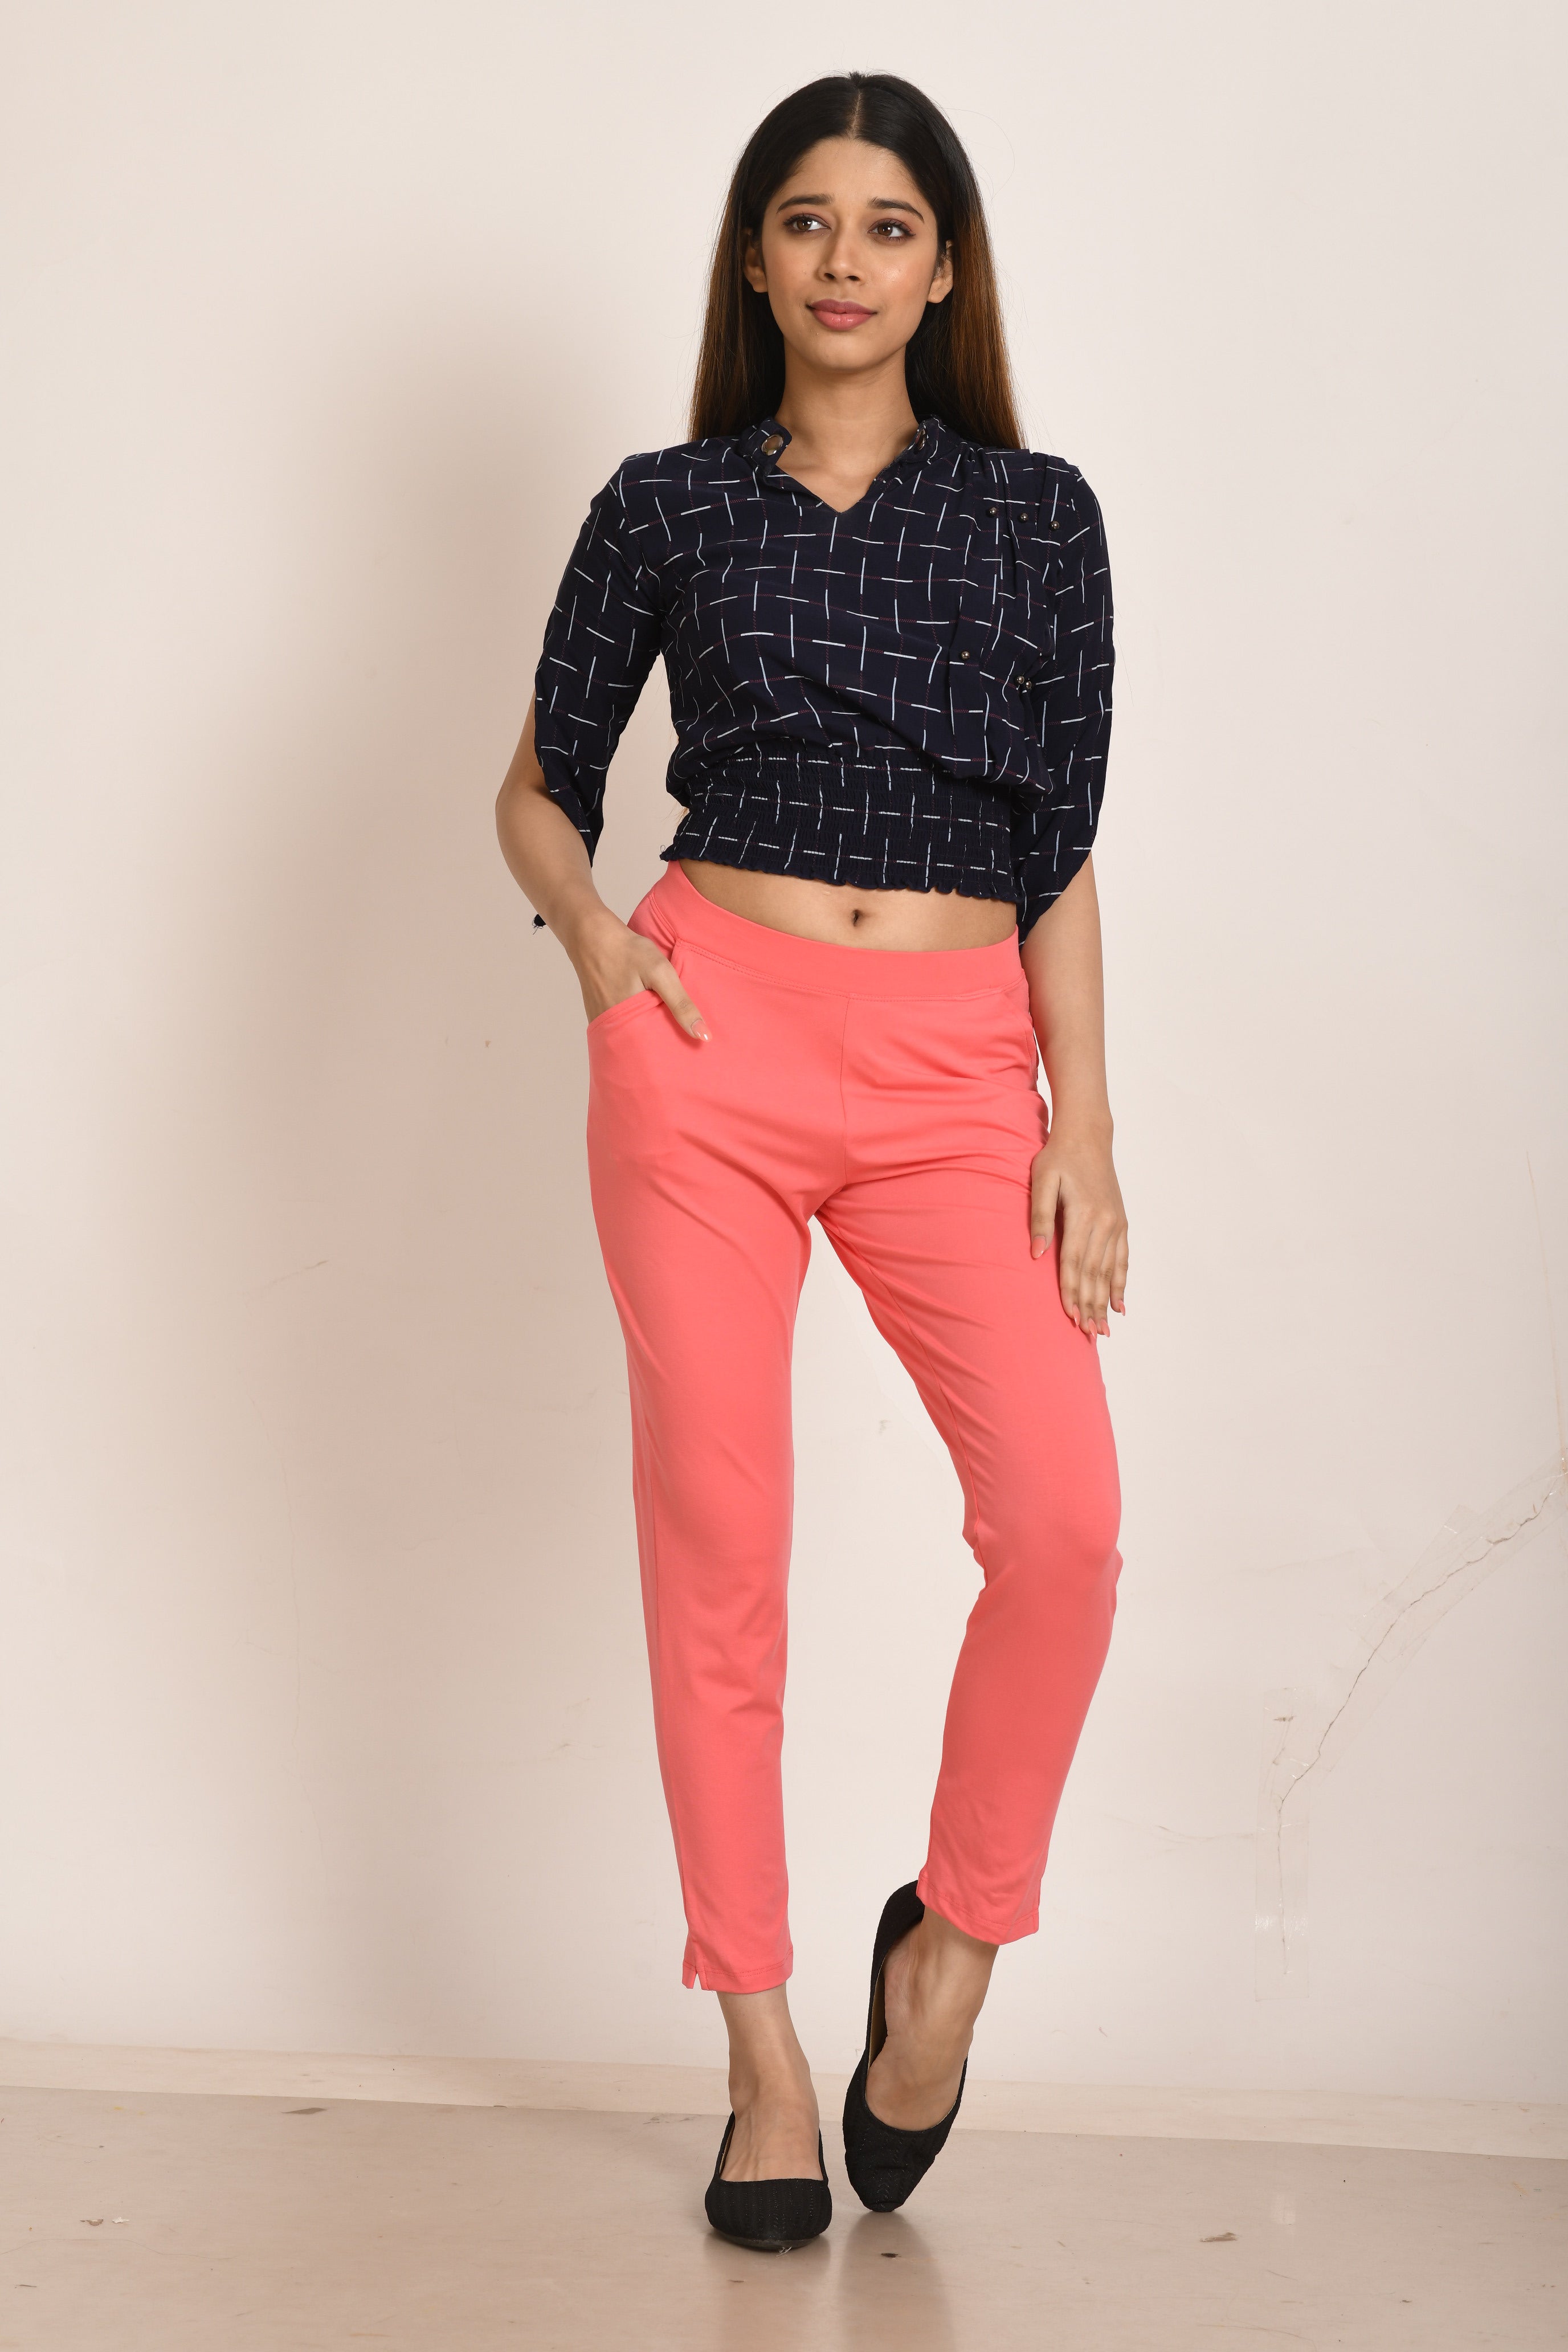 Buy Deepee Twister Knit Pants - Yoga Pants, Kurti Pants, Leisure Wear –  Deepee Online Store